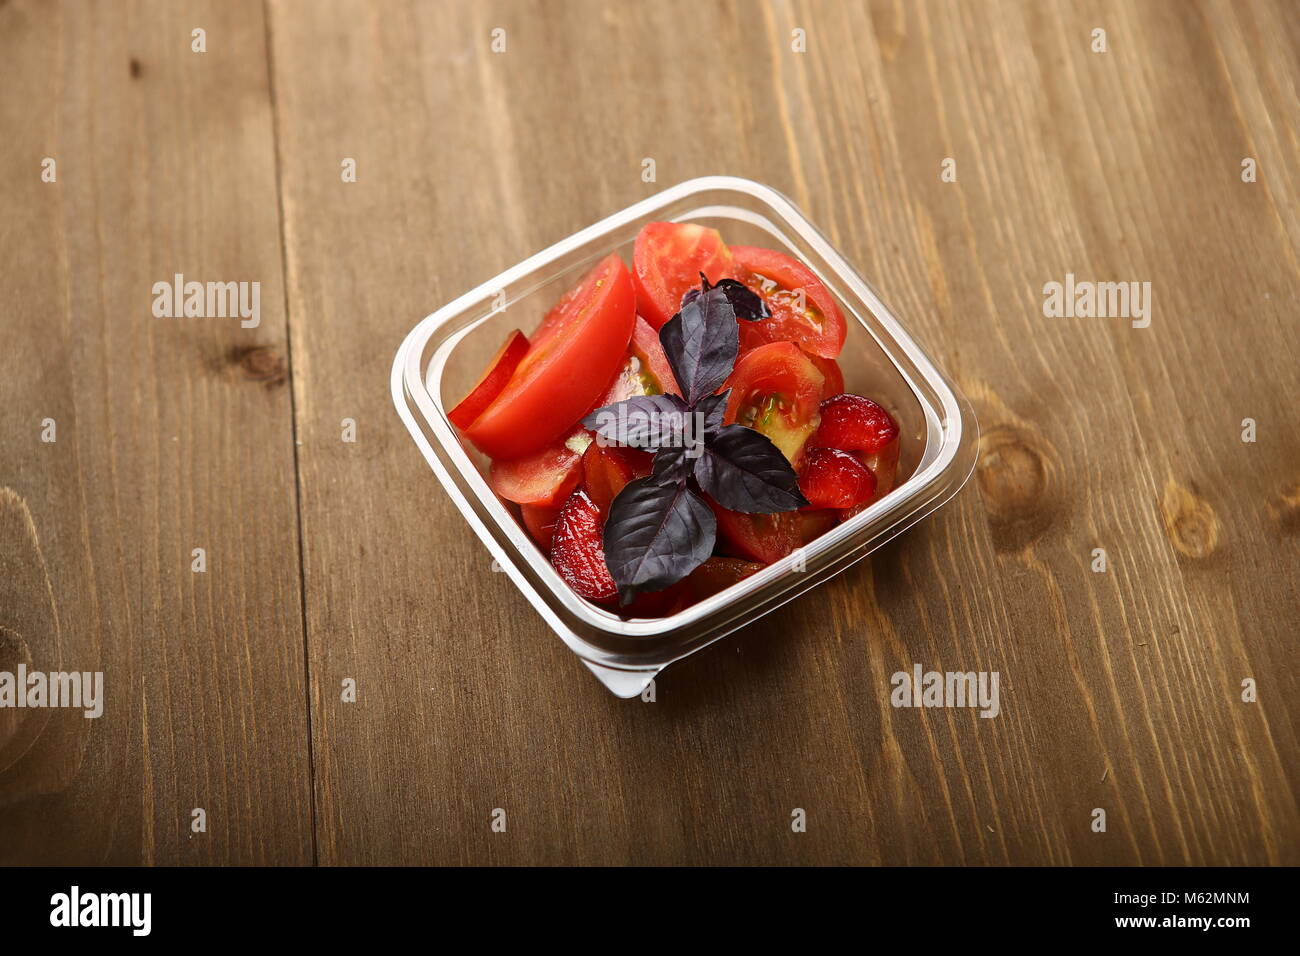 Salat von Tomaten und rote Pflaumen mit Basilikum für eine gesunde Ernährung. Lieferung nach Hause, sie in einem transparenten Plastikbehälter. Kalorienarme Lebensmittel Körper w zu steuern Stockfoto